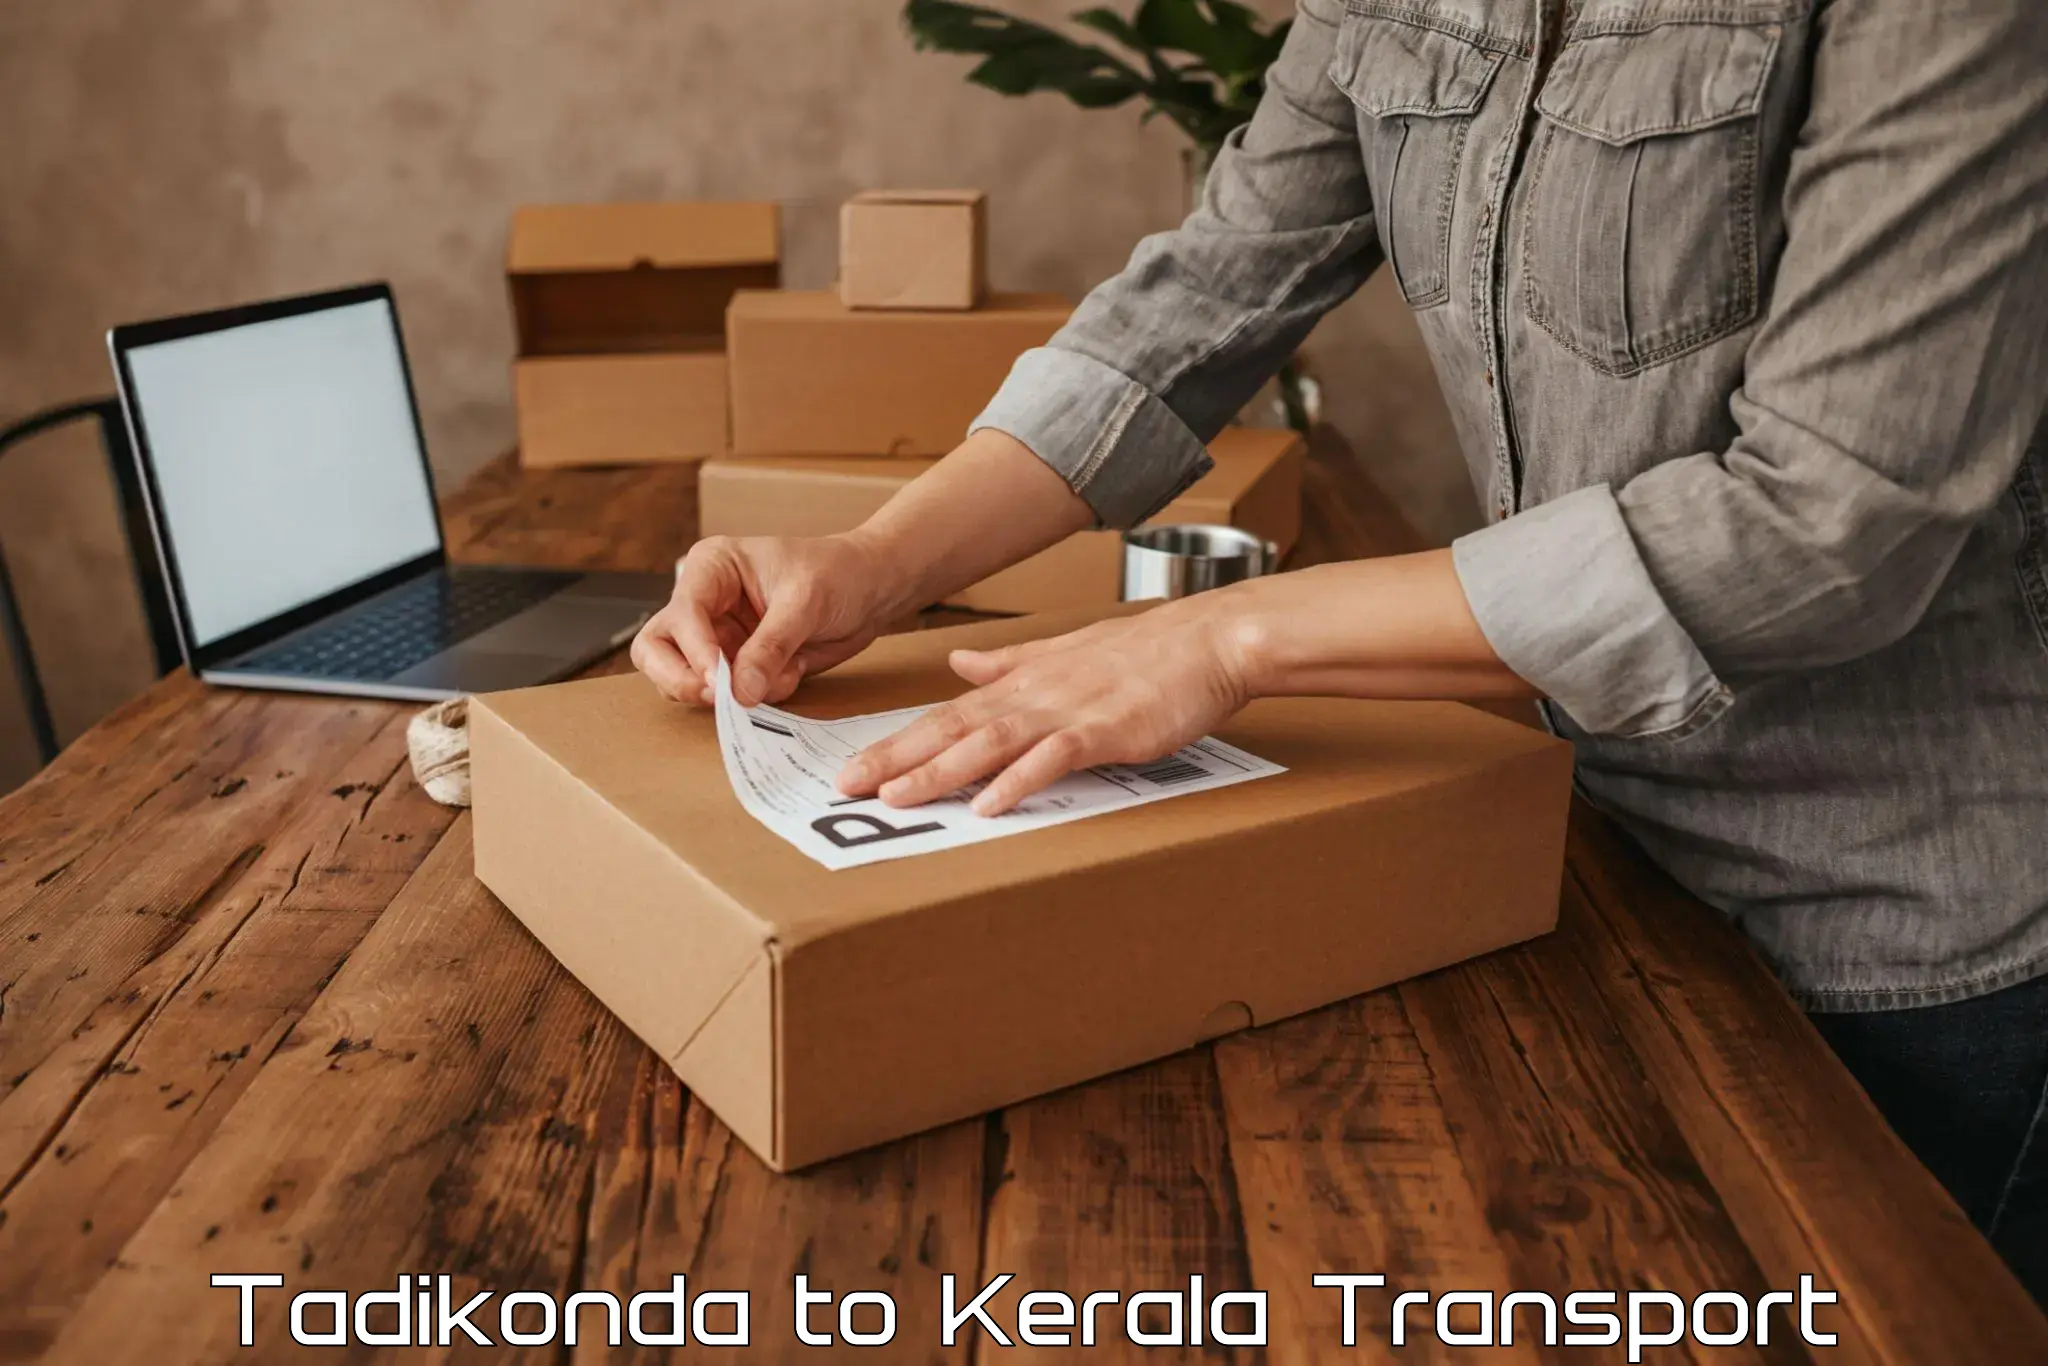 Online transport service Tadikonda to Valanchery